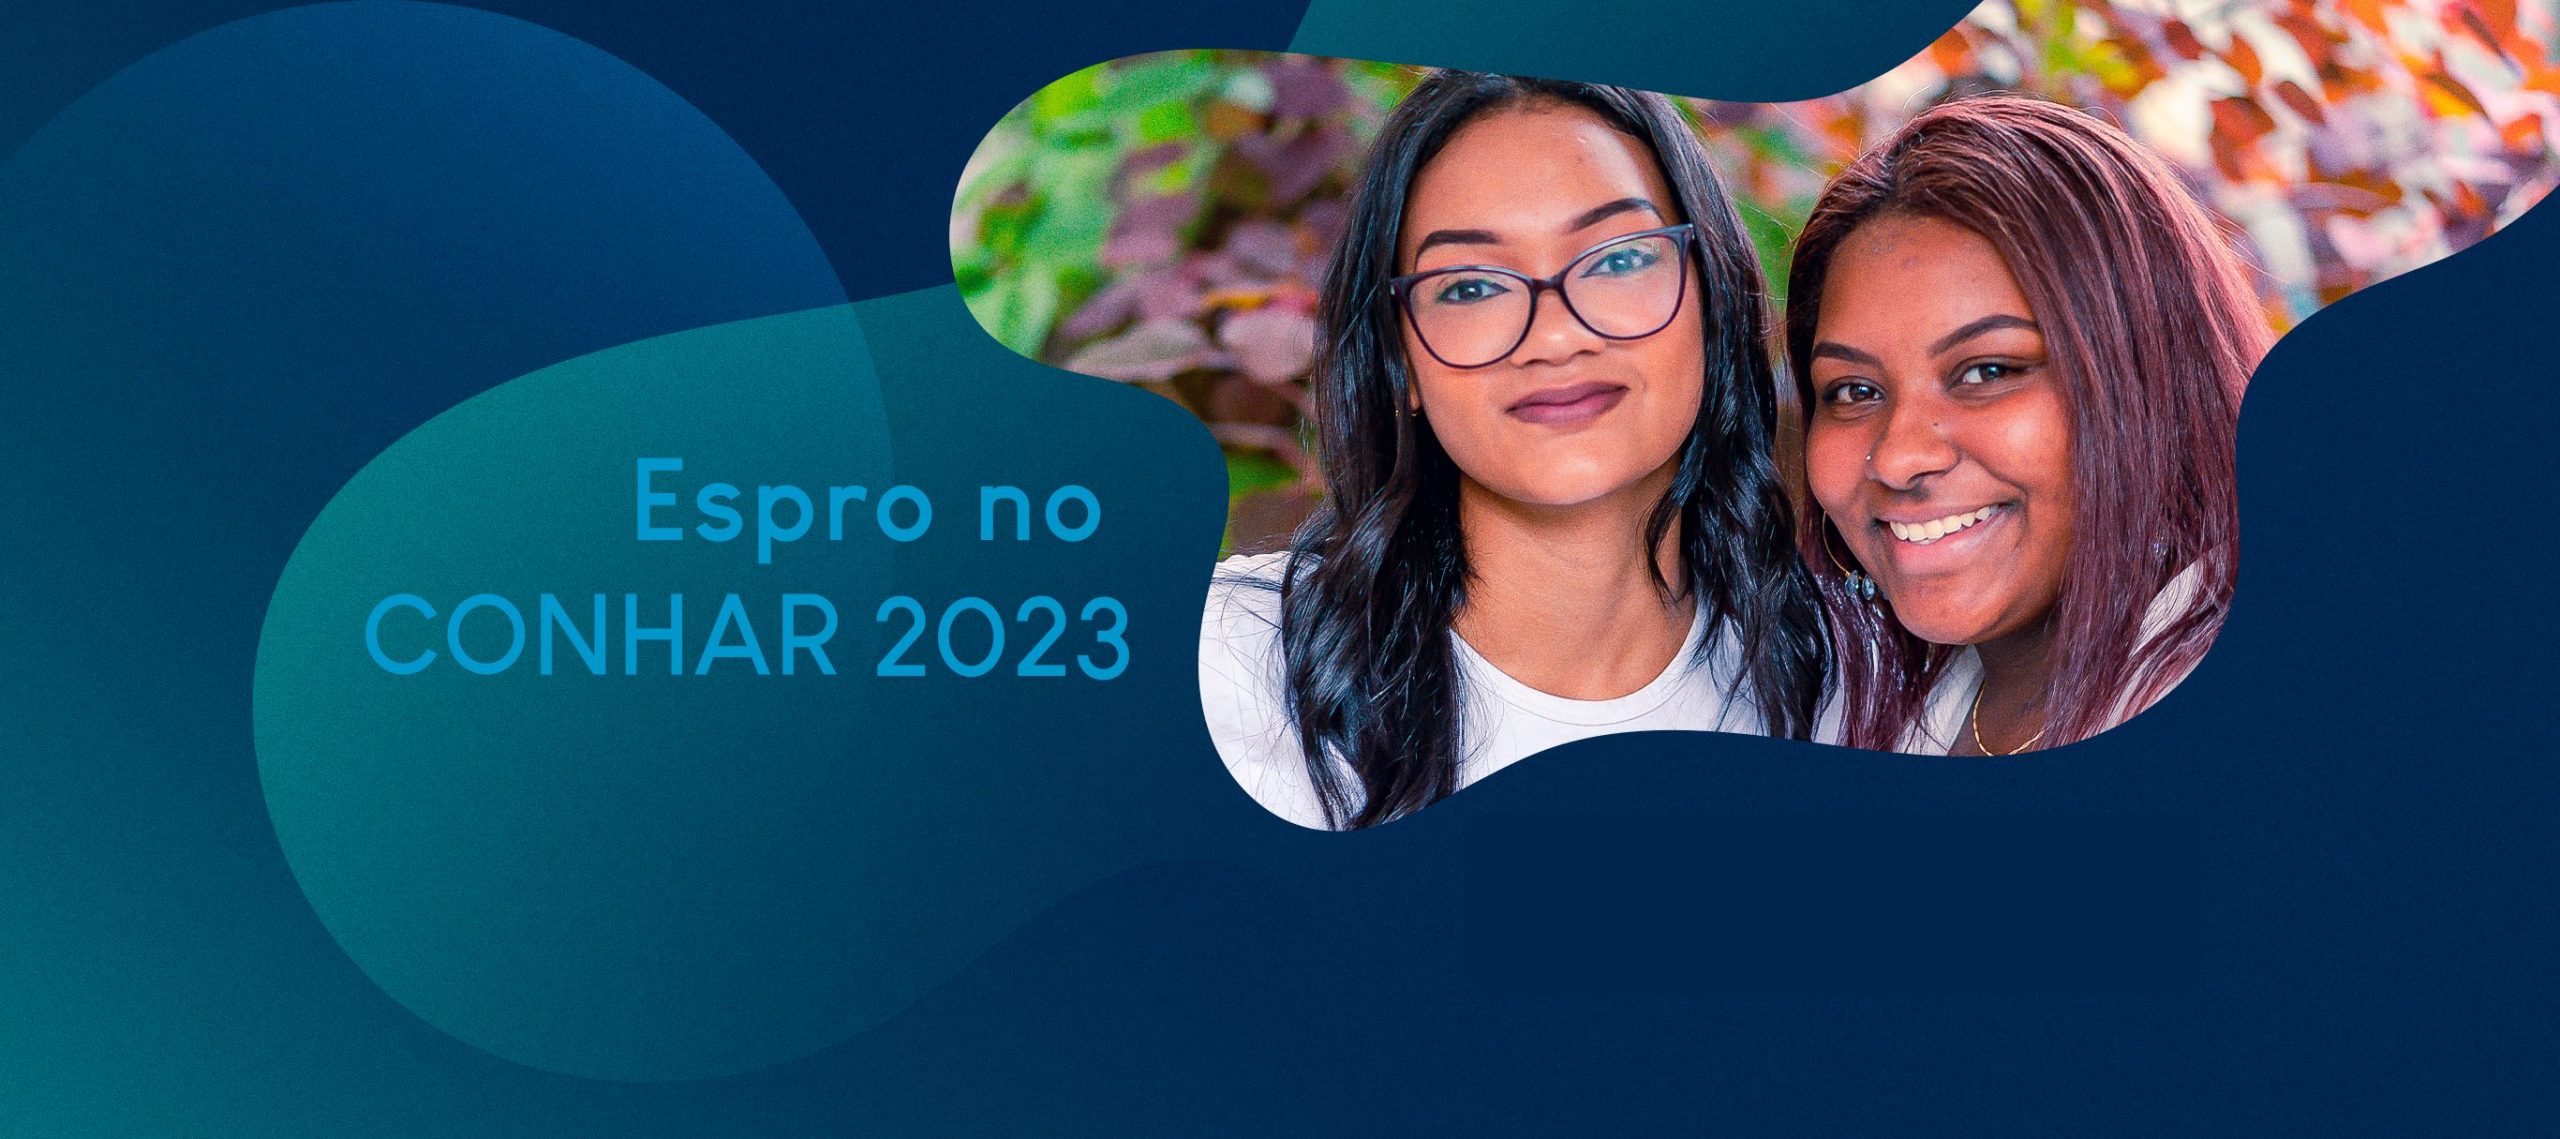 Duas jovens negras sorrindo com destaque para a chamada Espro no Conarh 2023